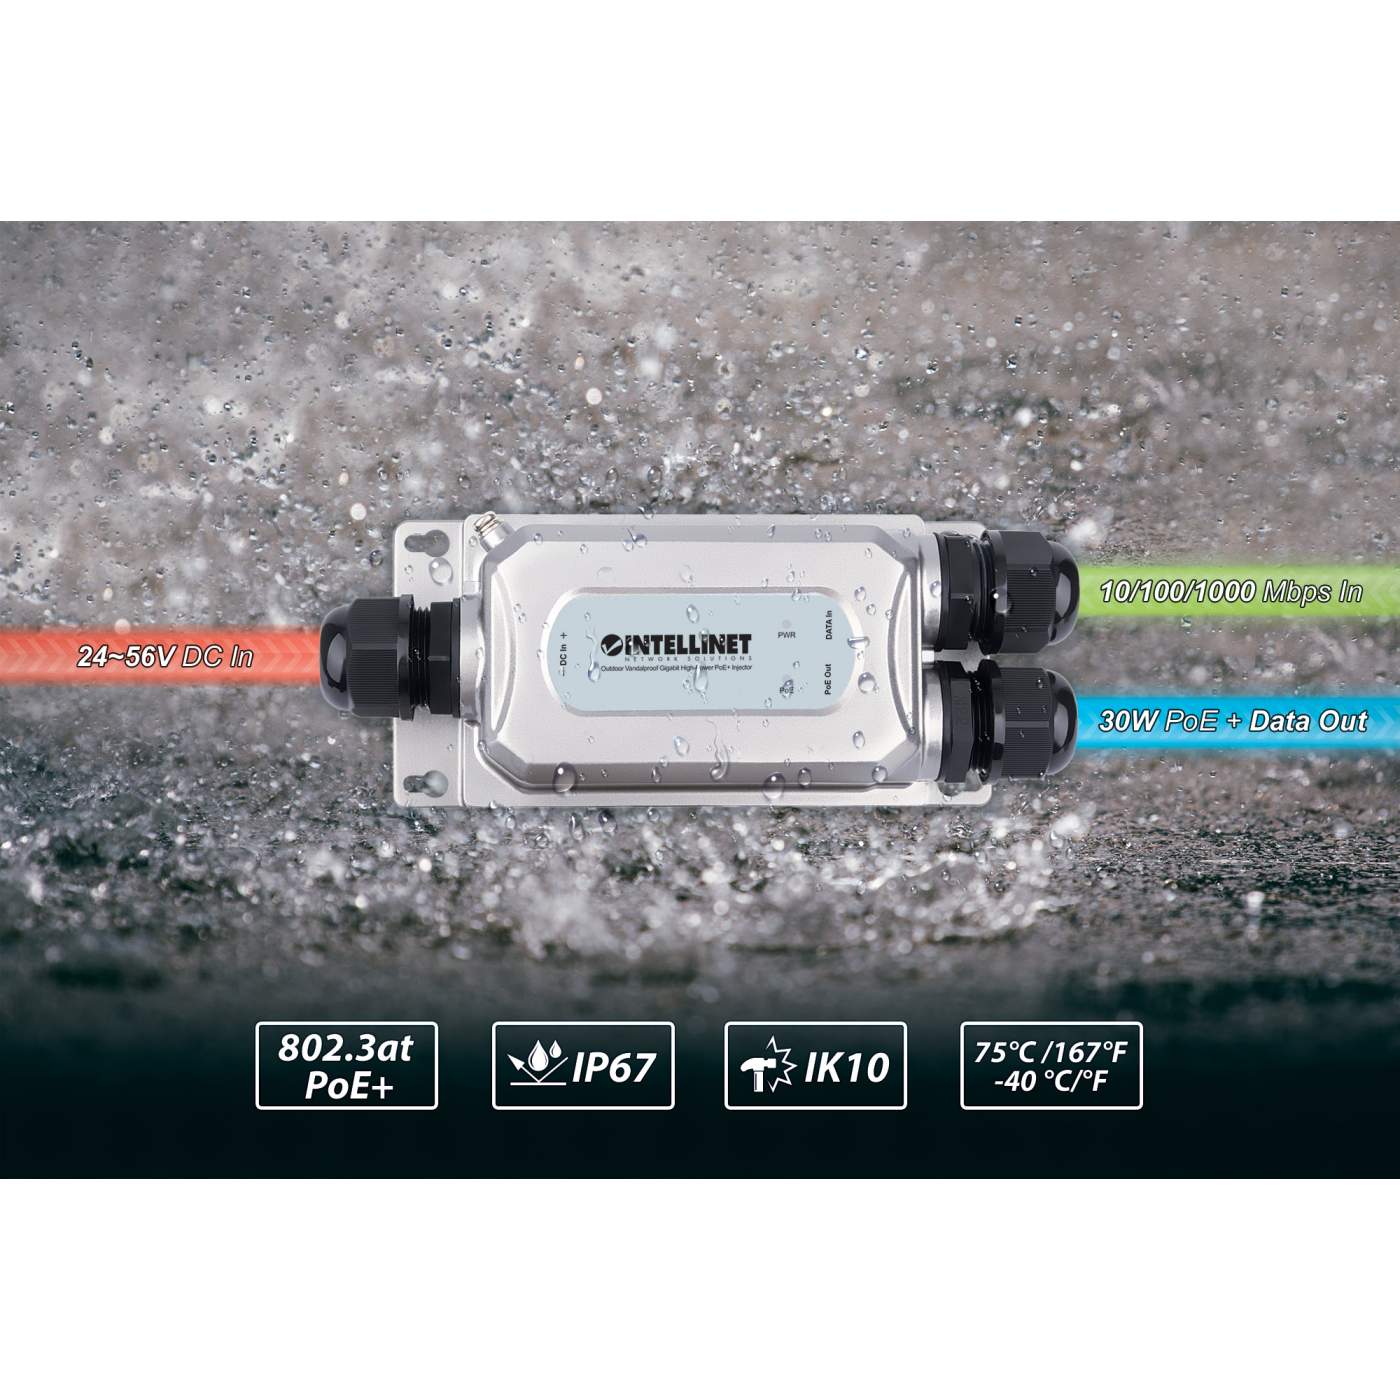 Outdoor Vandalproof Gigabit High-Power PoE+ Injector Image 11